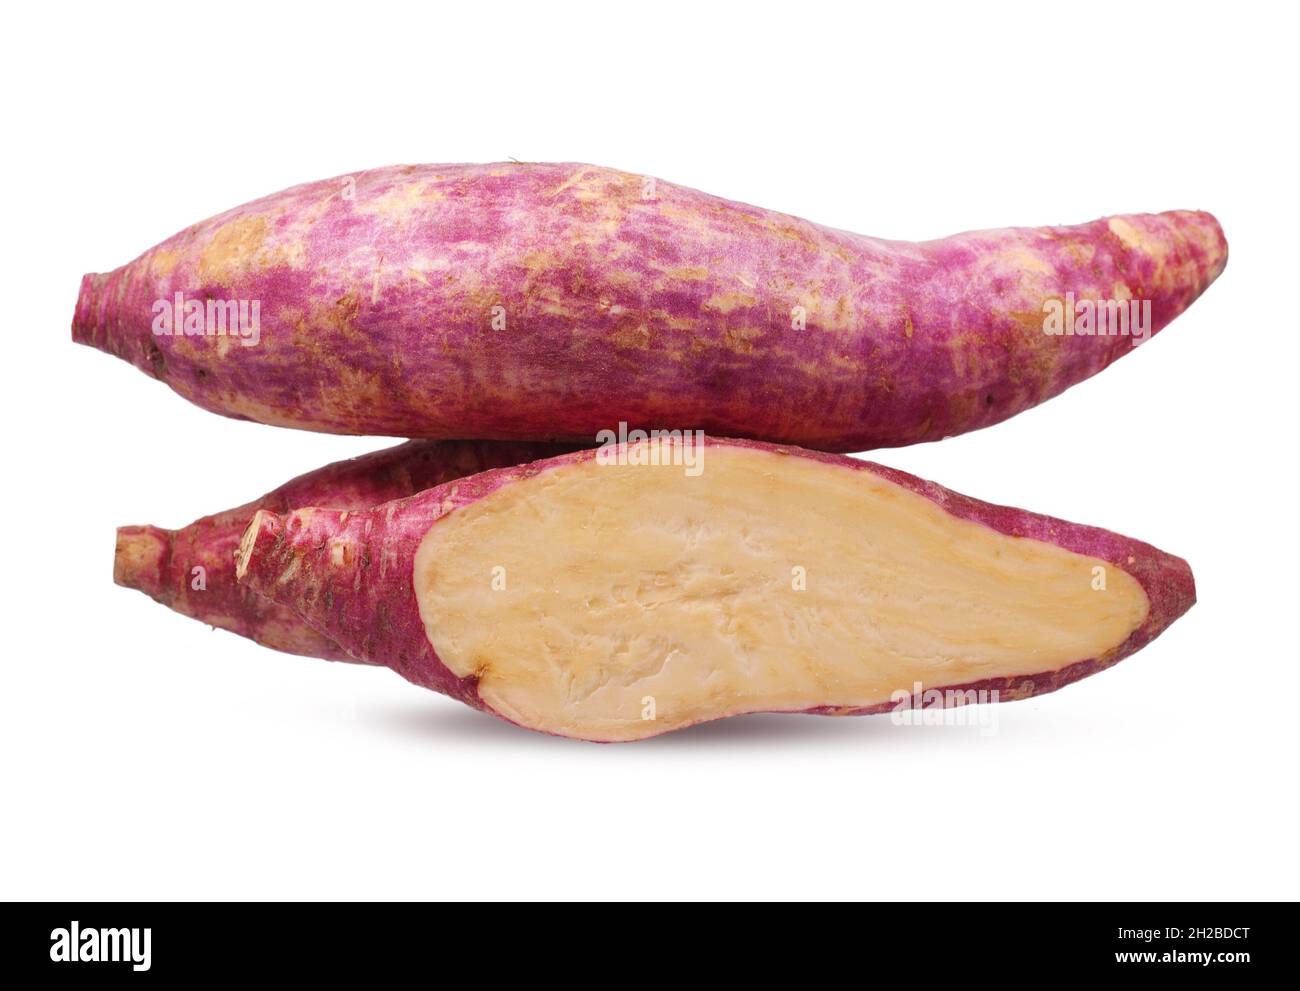 Sweet potato isolated on white background Stock Photo